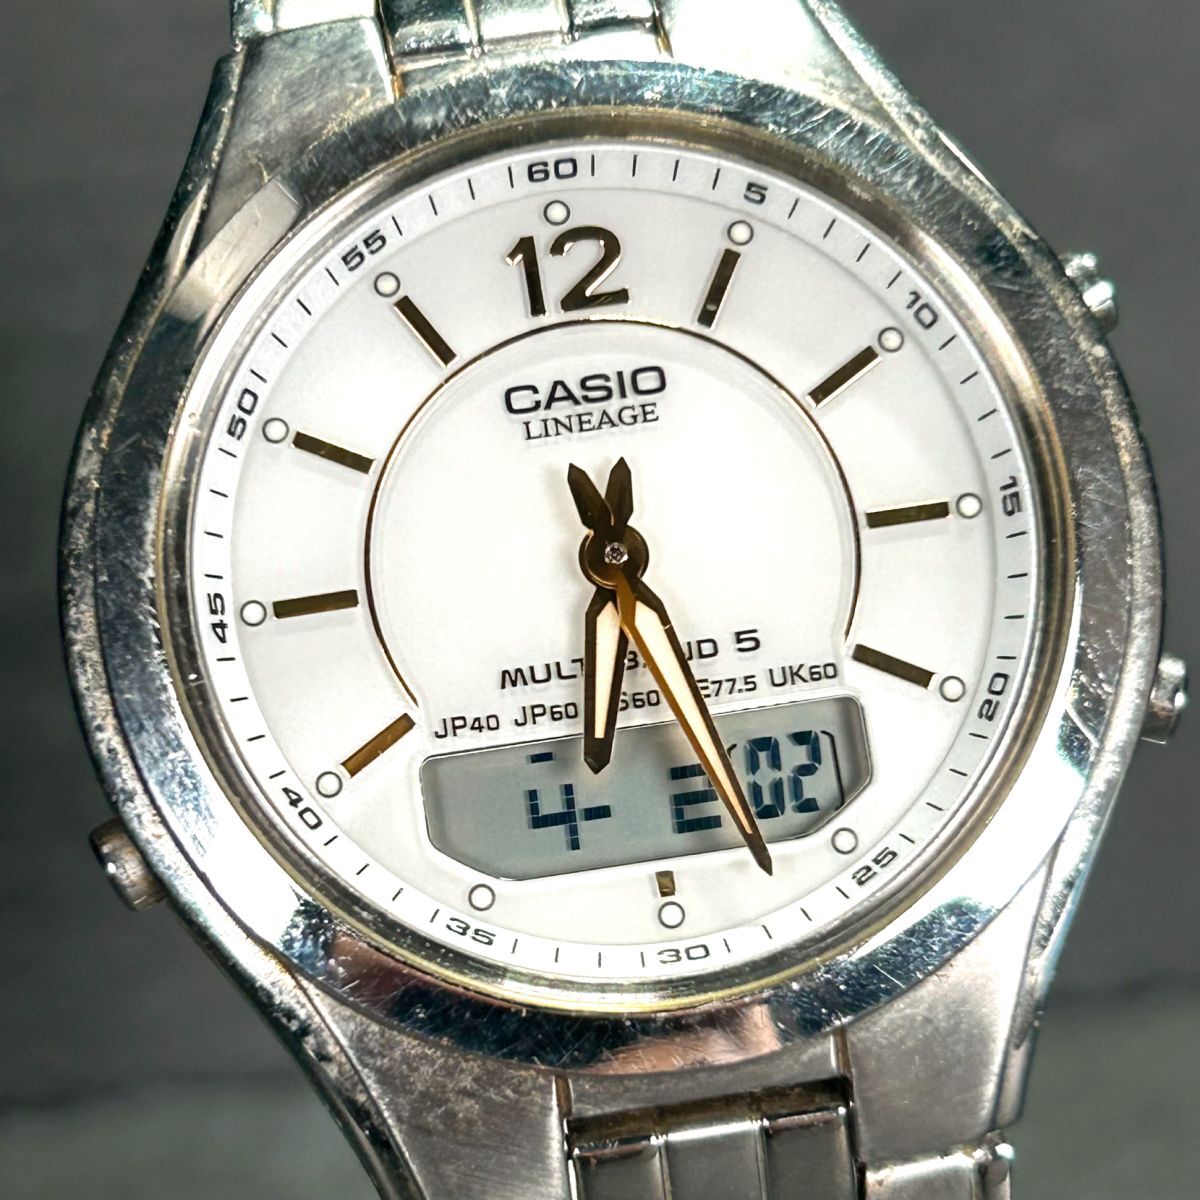 CASIO カシオ LINEAGE リニエージ LCW-M200DJ-7 腕時計 タフソーラー 電波時計 アナデジ ホワイト ゴールド ステンレススチール メンズの画像1